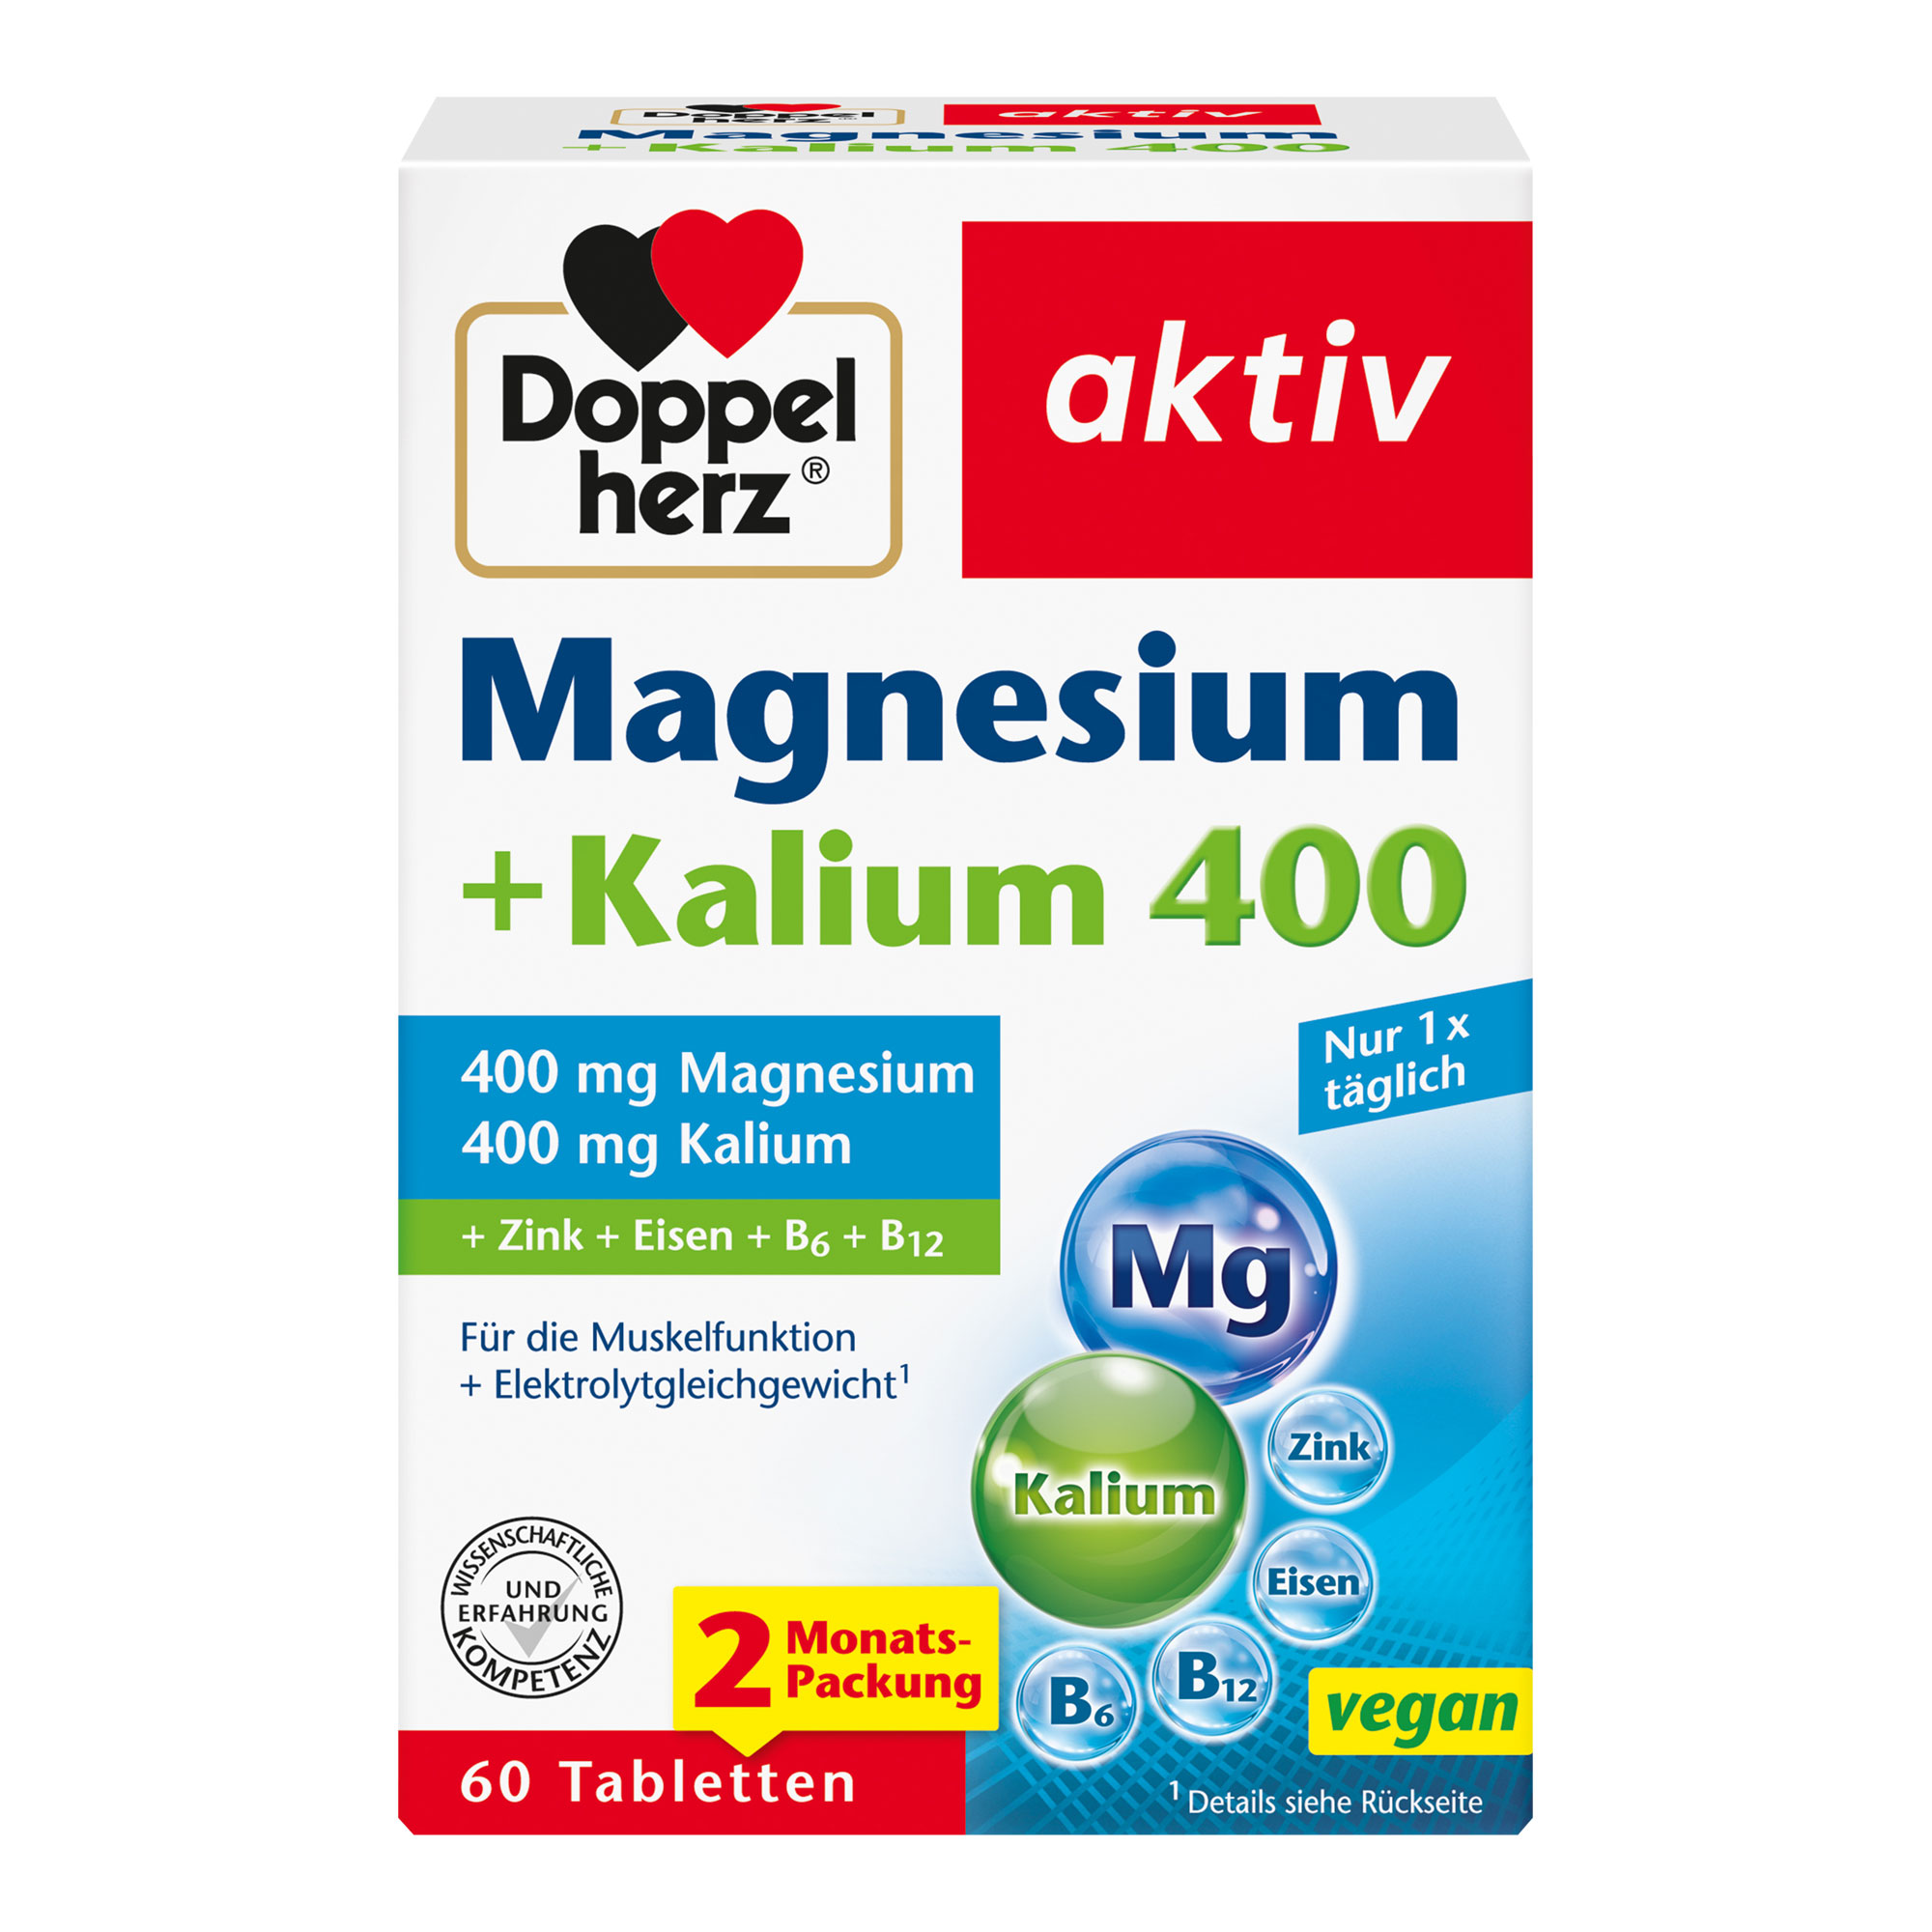 Nahrungsergänzungsmittel mit Magnesium und Kalium.